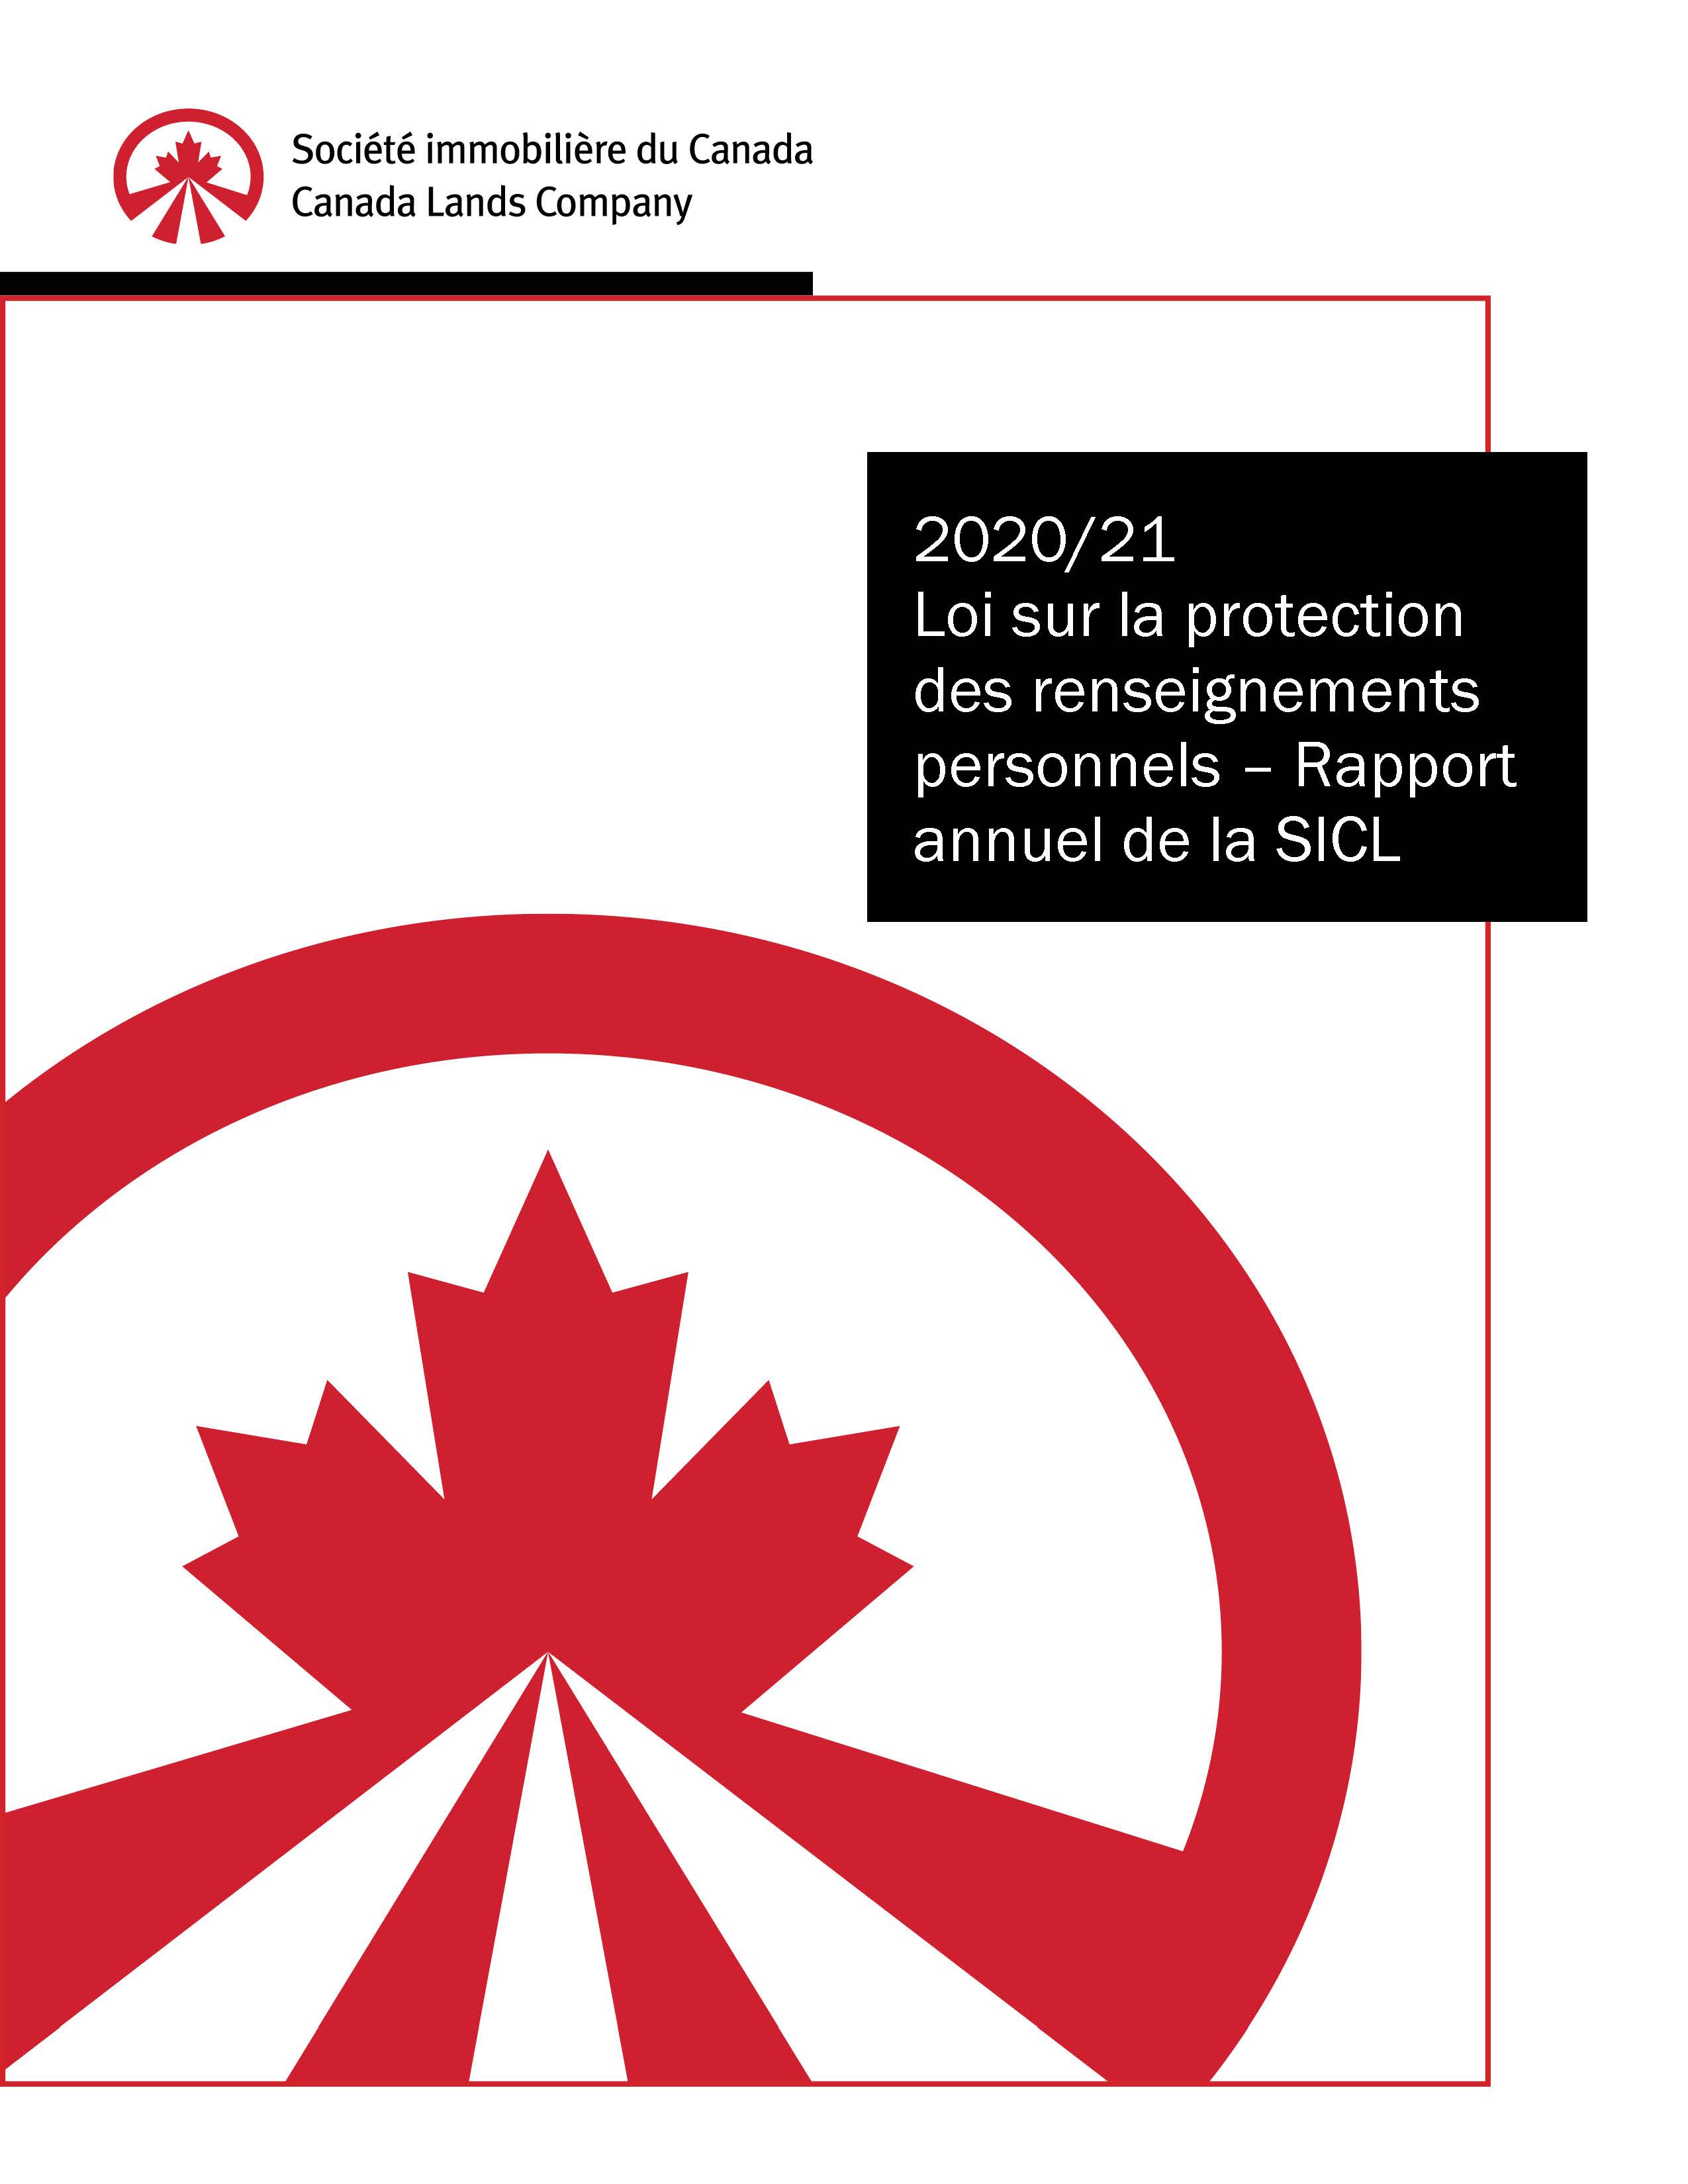 2020-21 loi sur la protection des renseignements personnels - Rapport annuel de la SICL